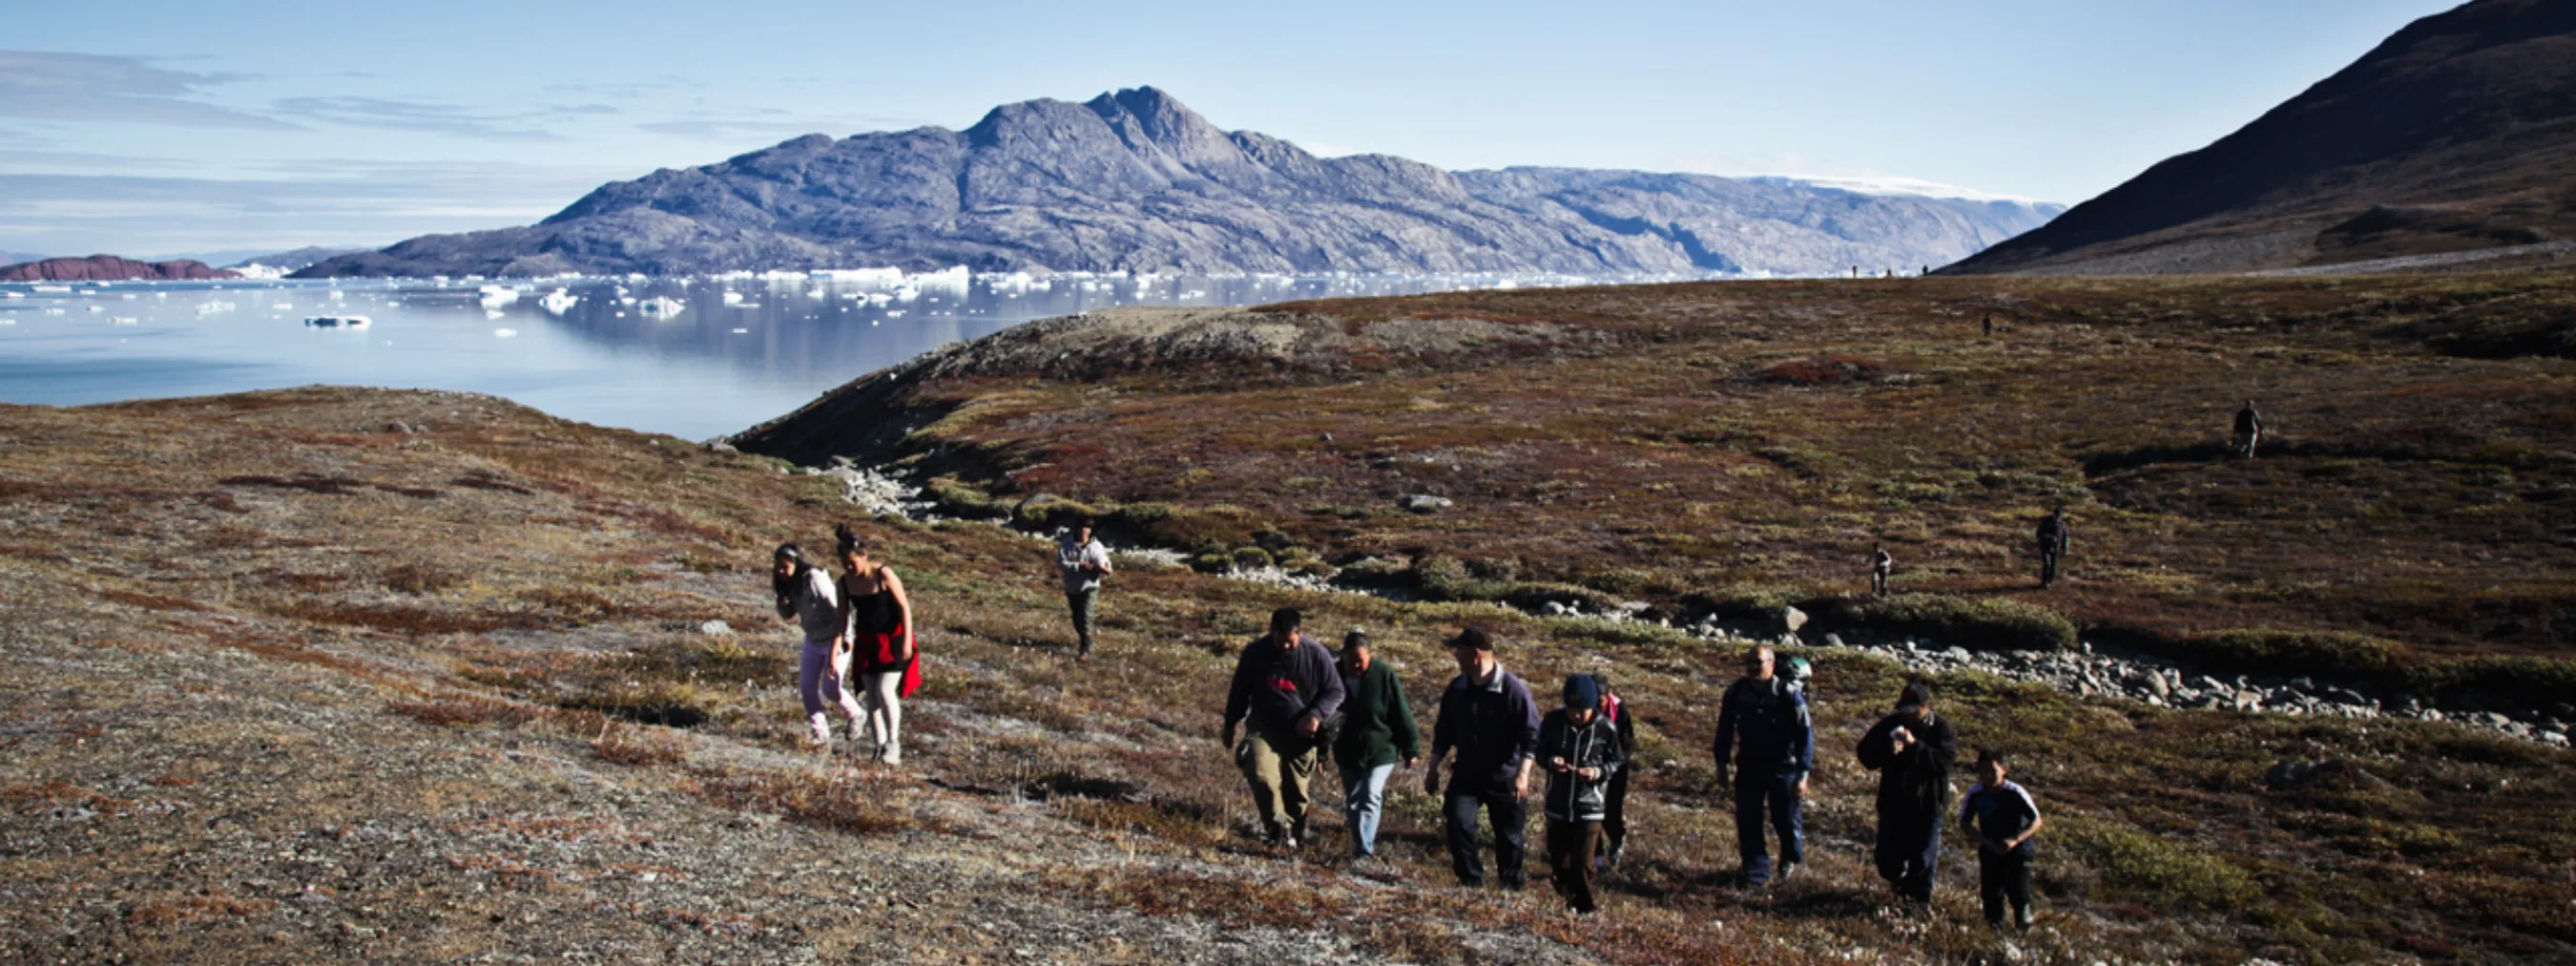 Wanderung in Scoresbysund, Ostgrönland
Wandergruppe geht Hügel bergauf
karge Landschaft, im Hintergrund Eisfjord